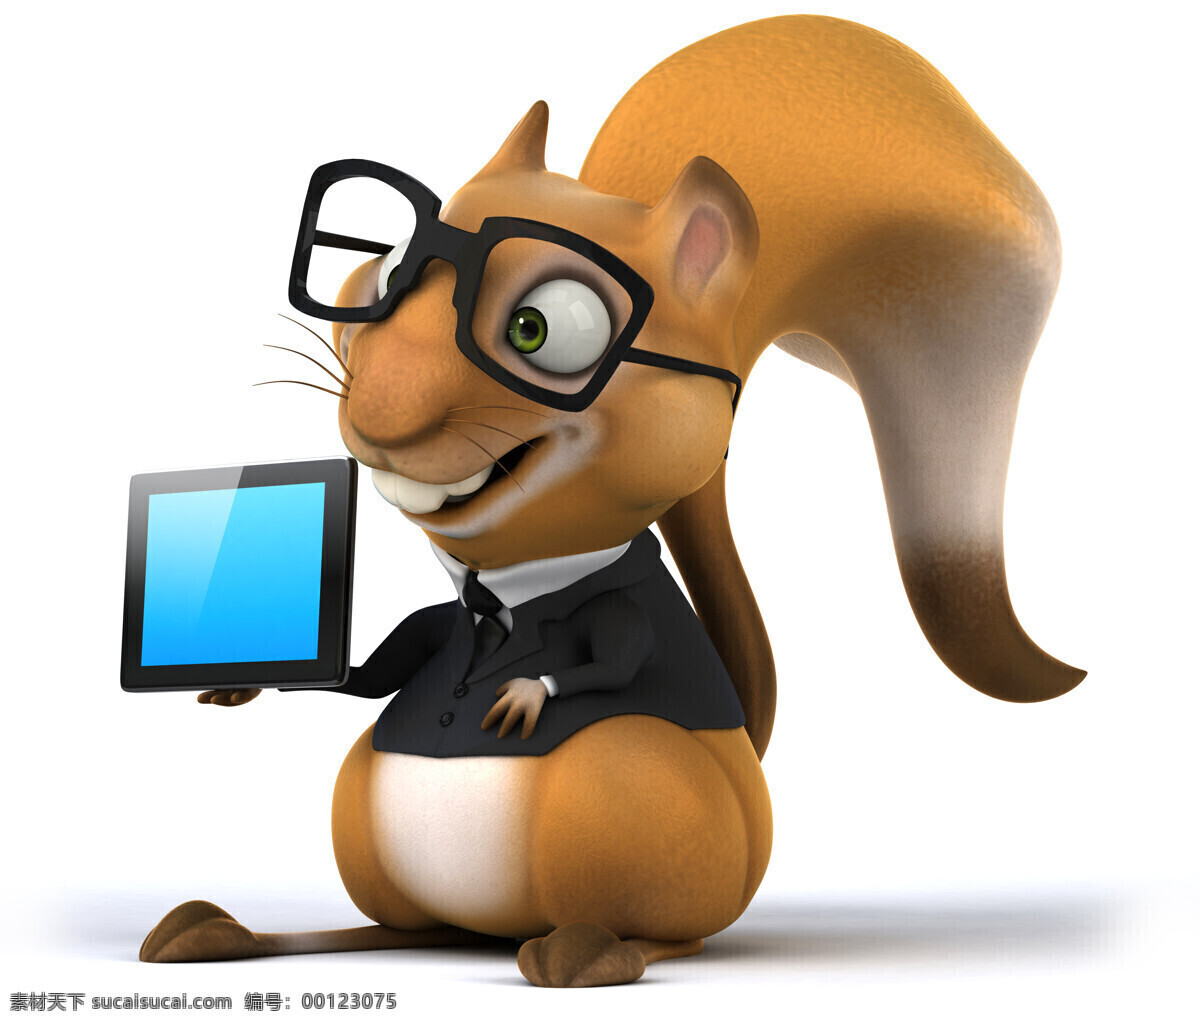 捧 平板电脑 的卡 通 松鼠 卡通松鼠 3d松鼠 卡通动物 陆地动物 生物世界